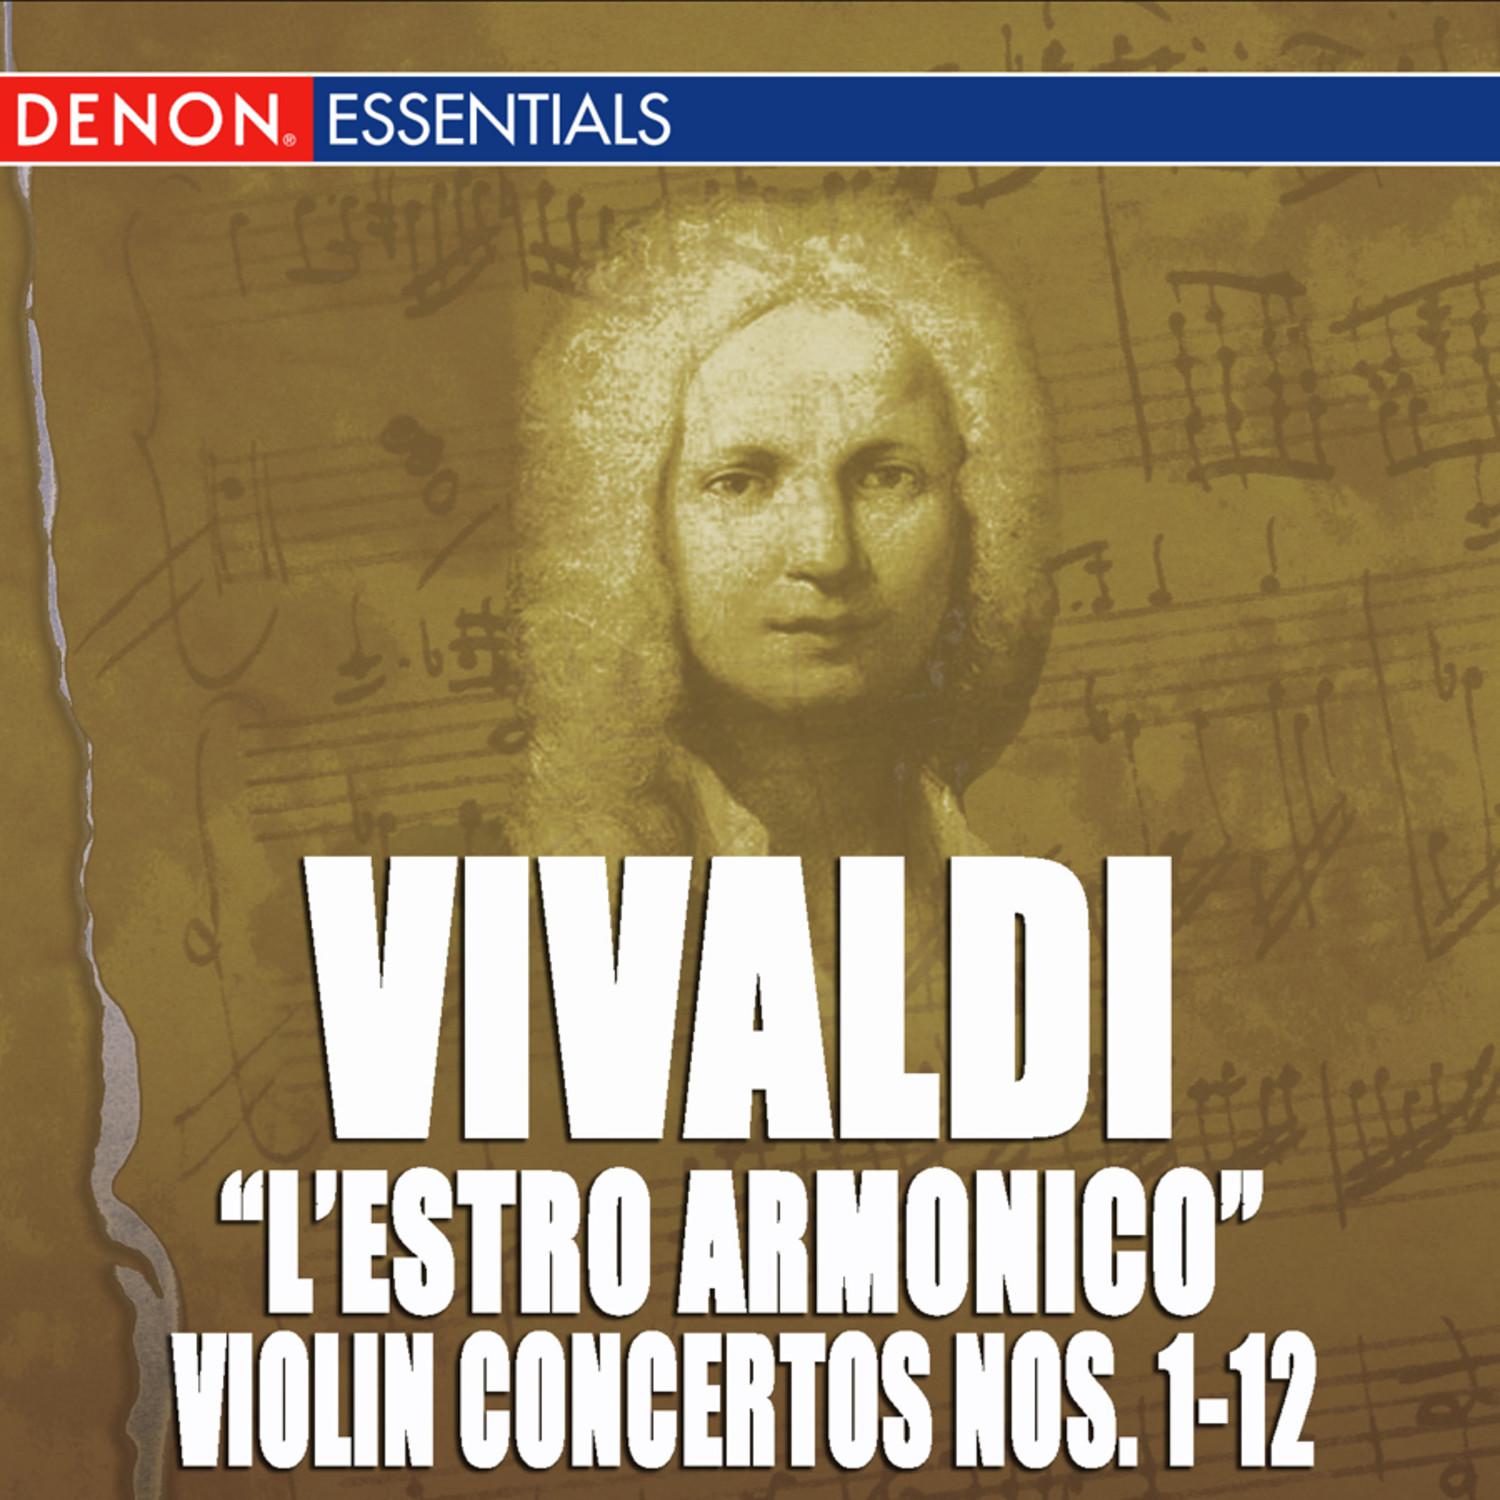 Concerto for 4 Violins, Strings & B.c. No. 4 in E Minor, Op. 3 RV 550: II. Allegro assai